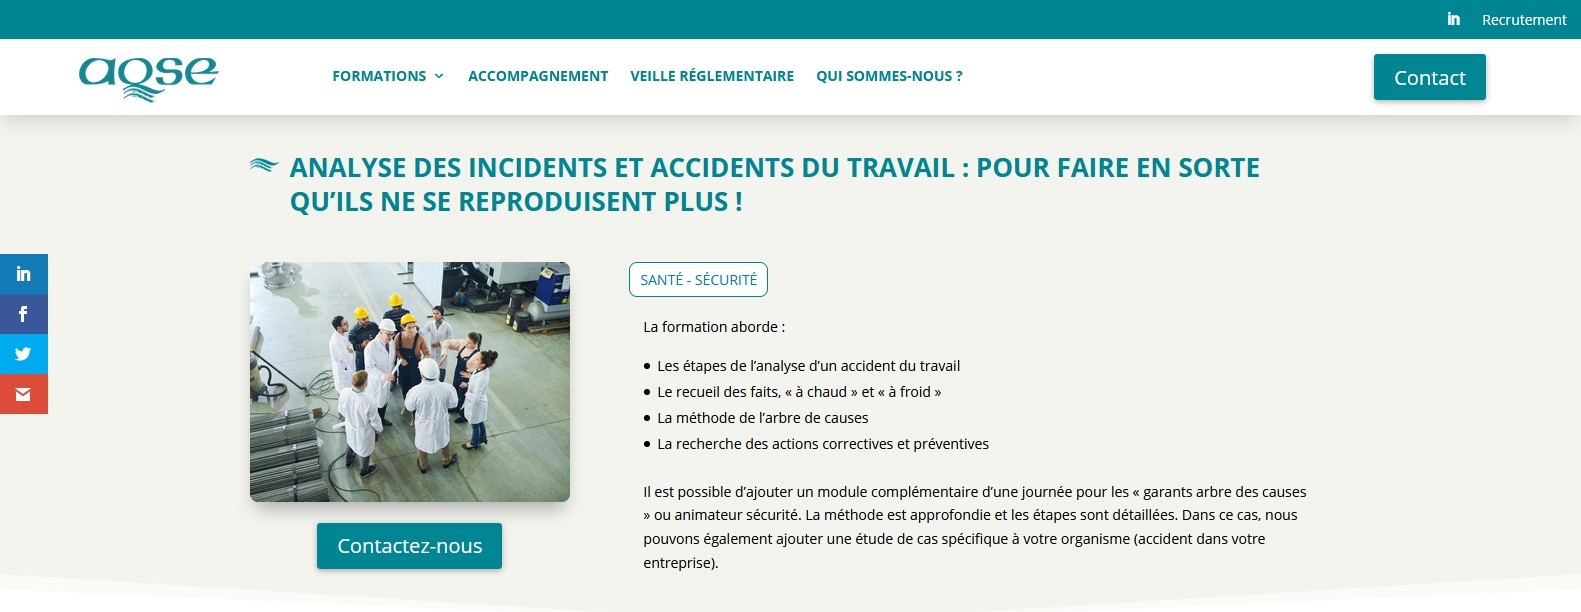 AQSE-france.fr Formation analyse des accidents du travail méthode de l'arbre des causes